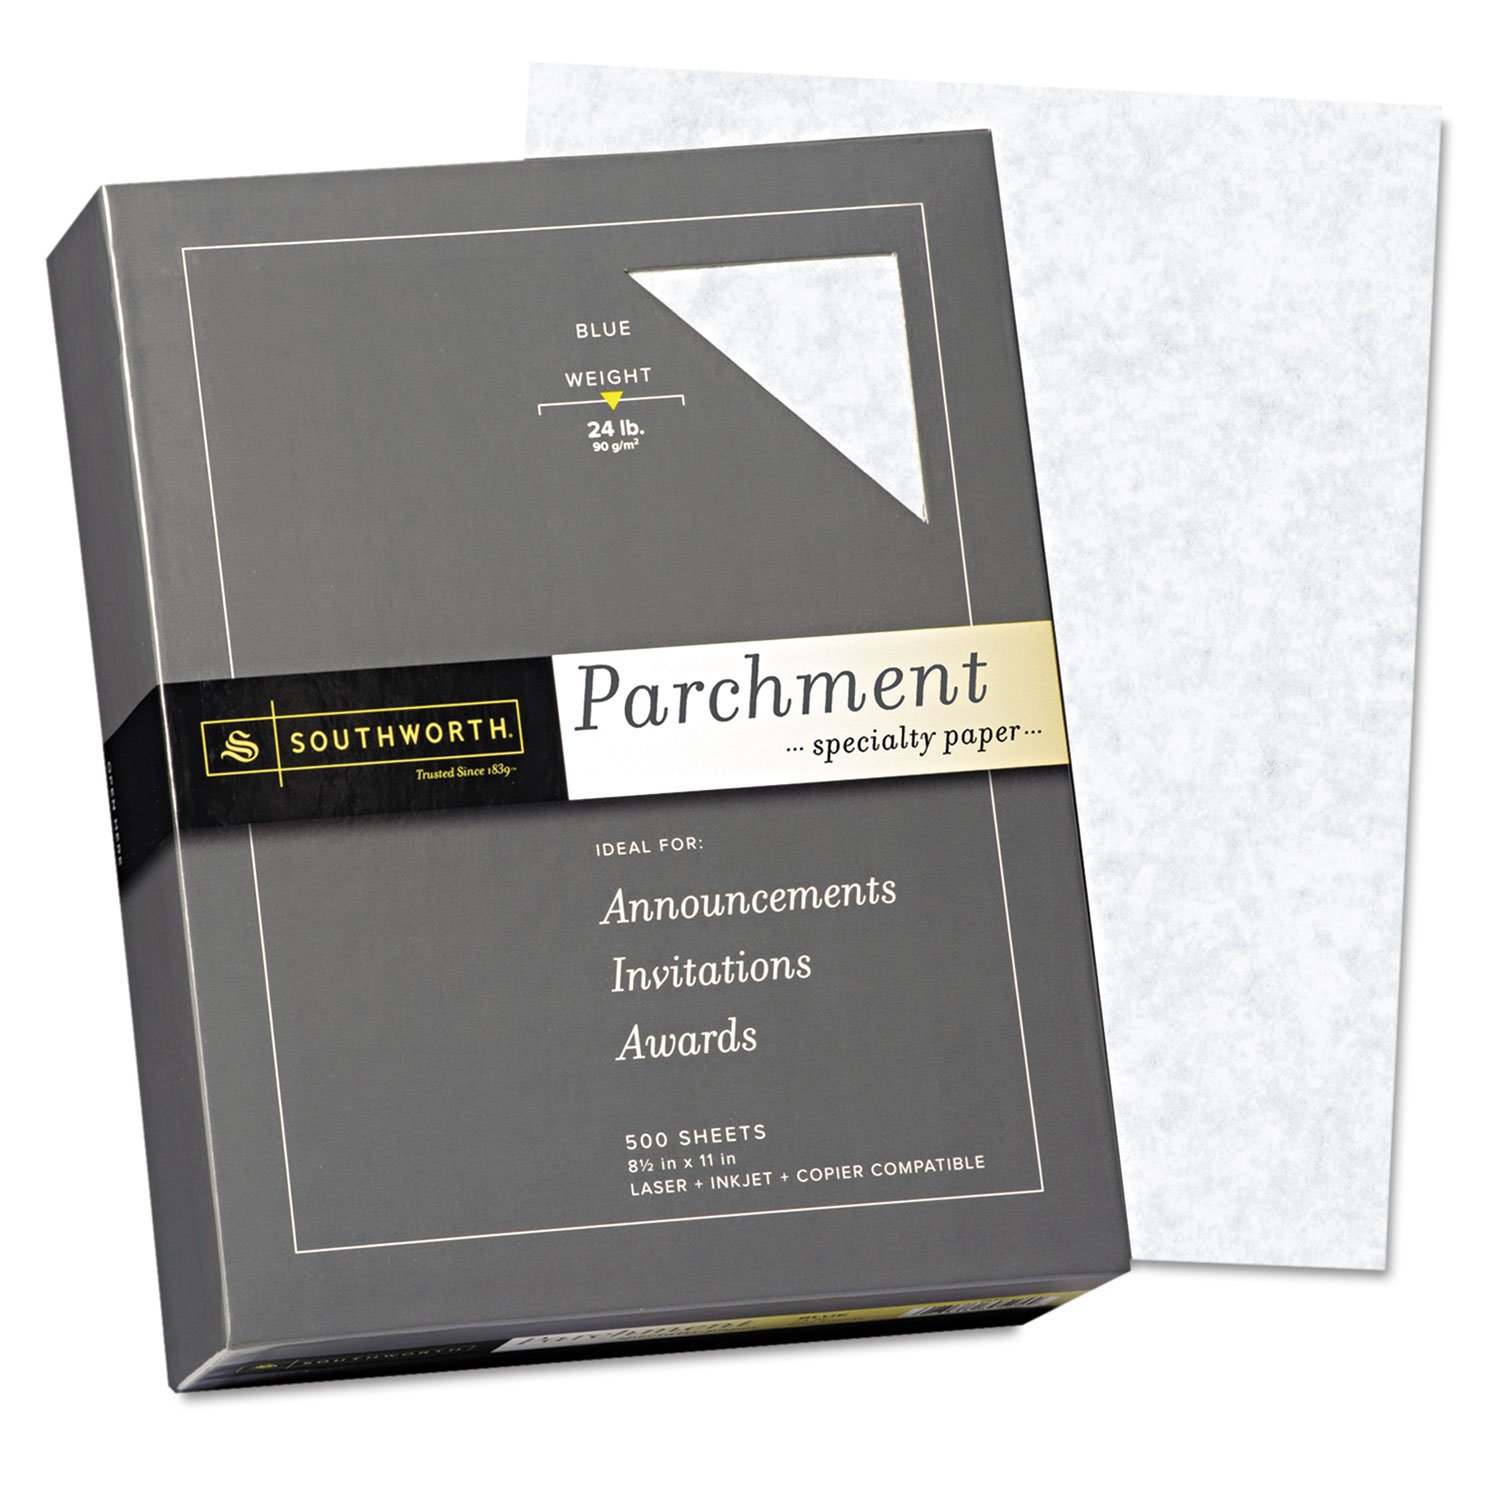 SOU964C - Southworth Parchment Specialty Paper